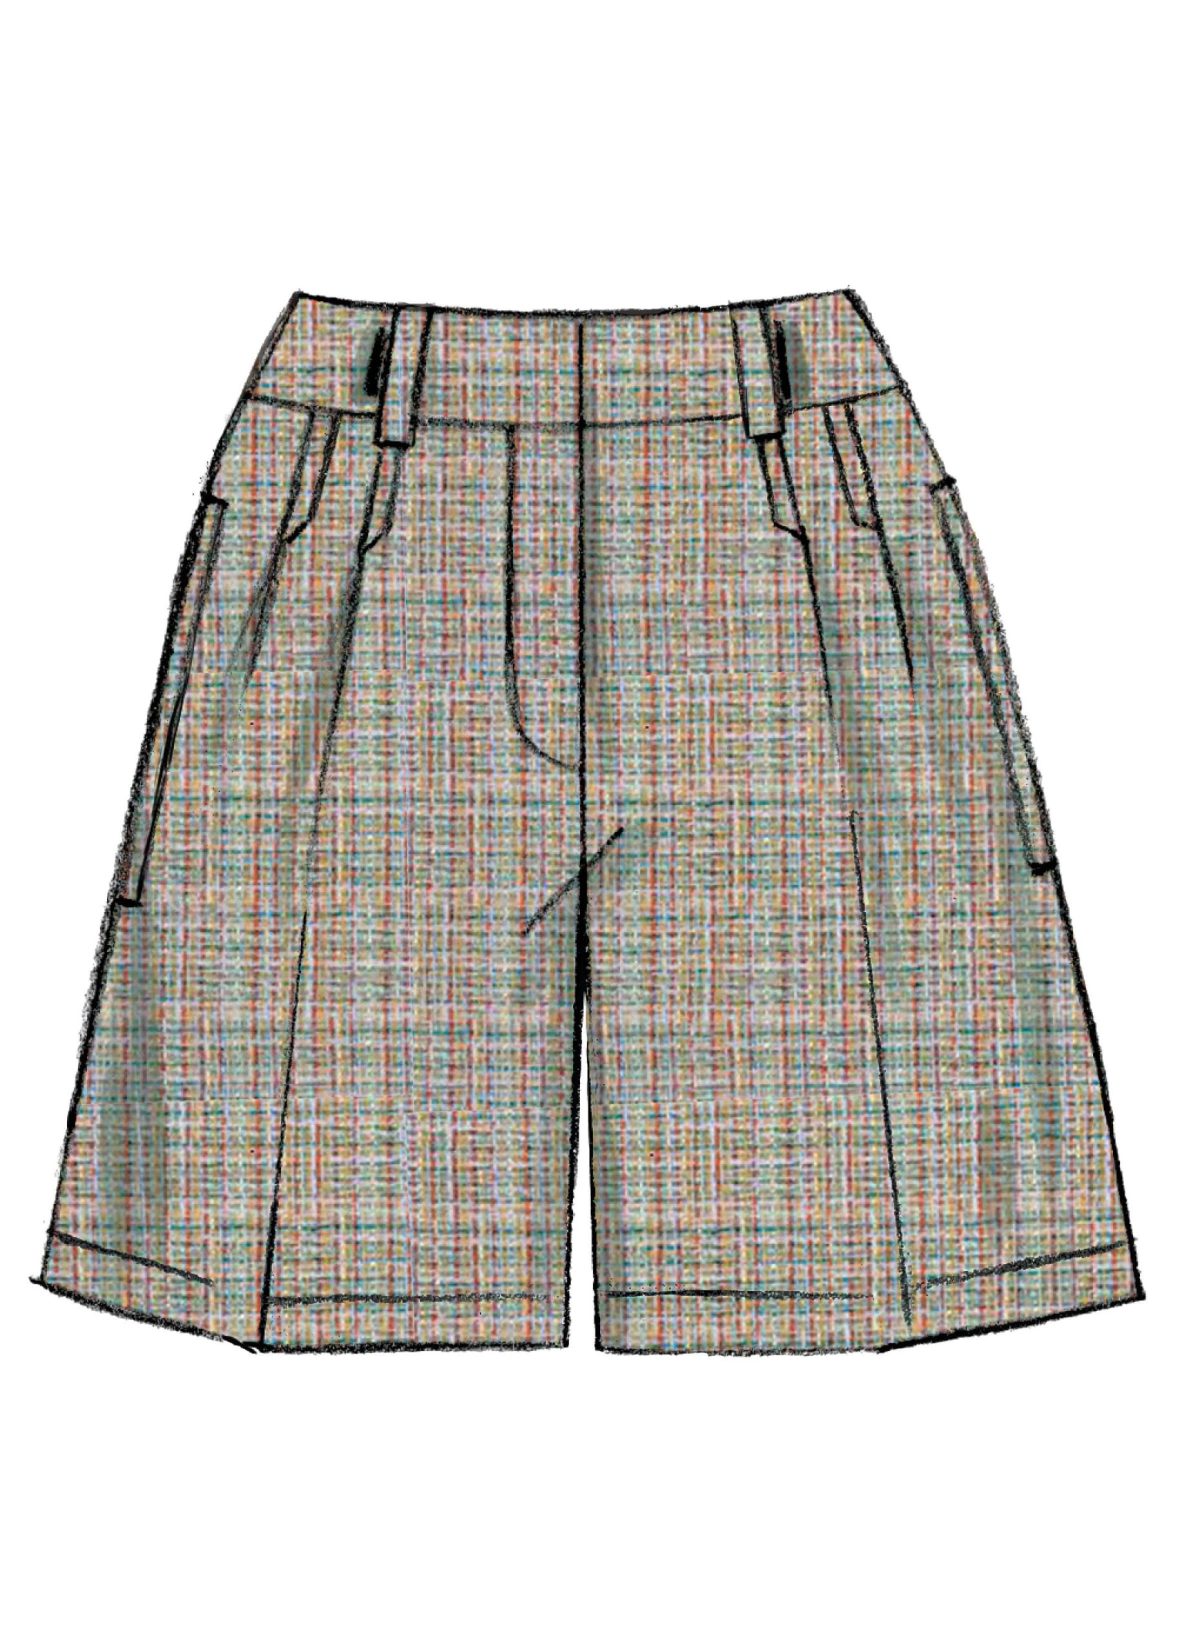 Vogue Patterns V9008 Misses' Shorts